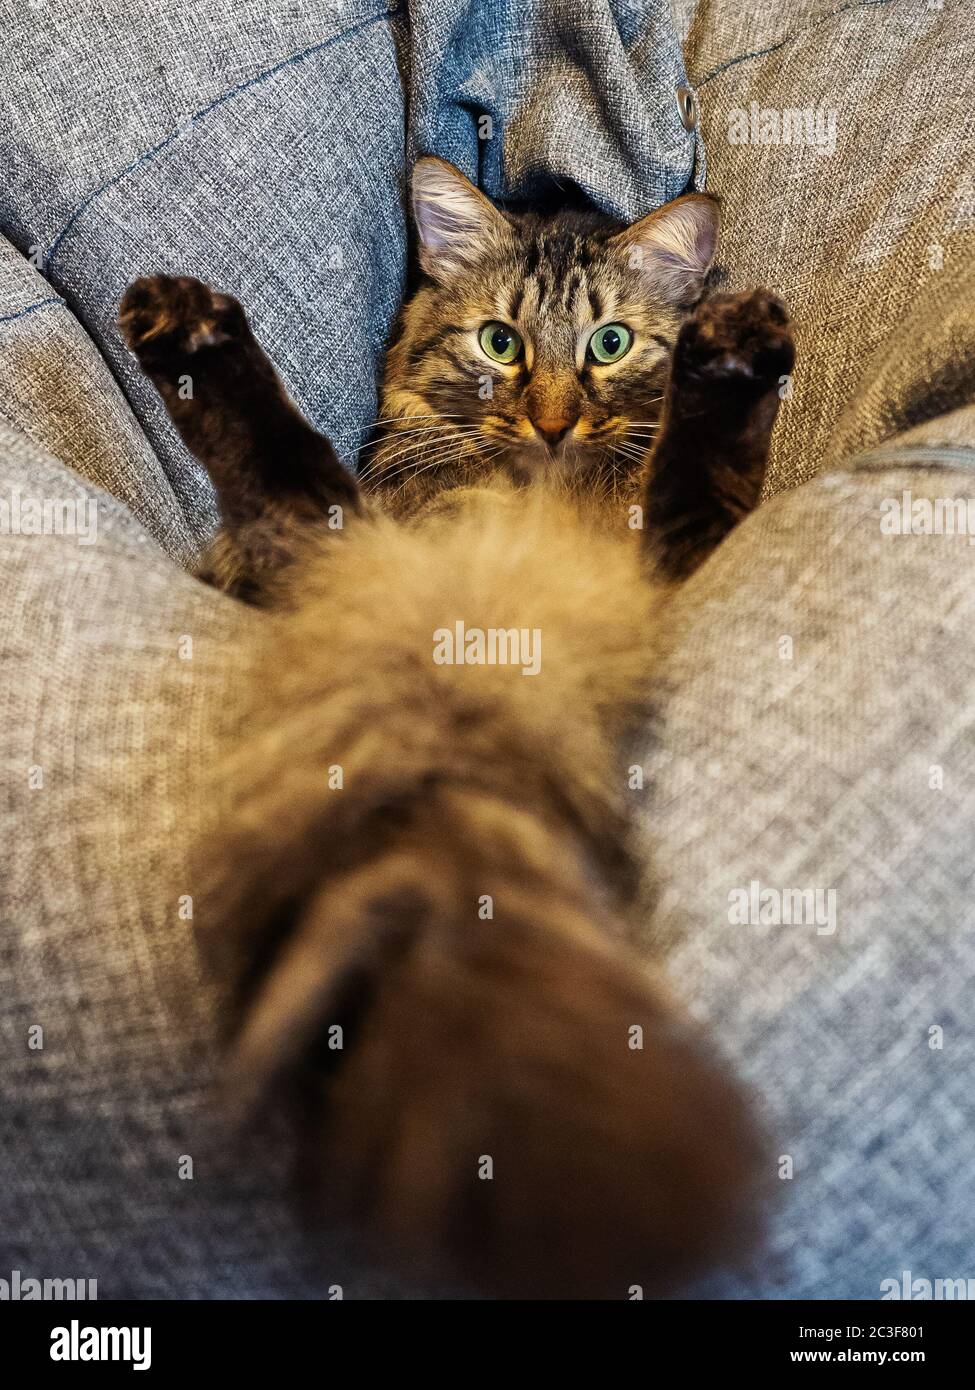 Un chat avec une grande queue moelleuse repose sur un oreiller gris doux Banque D'Images